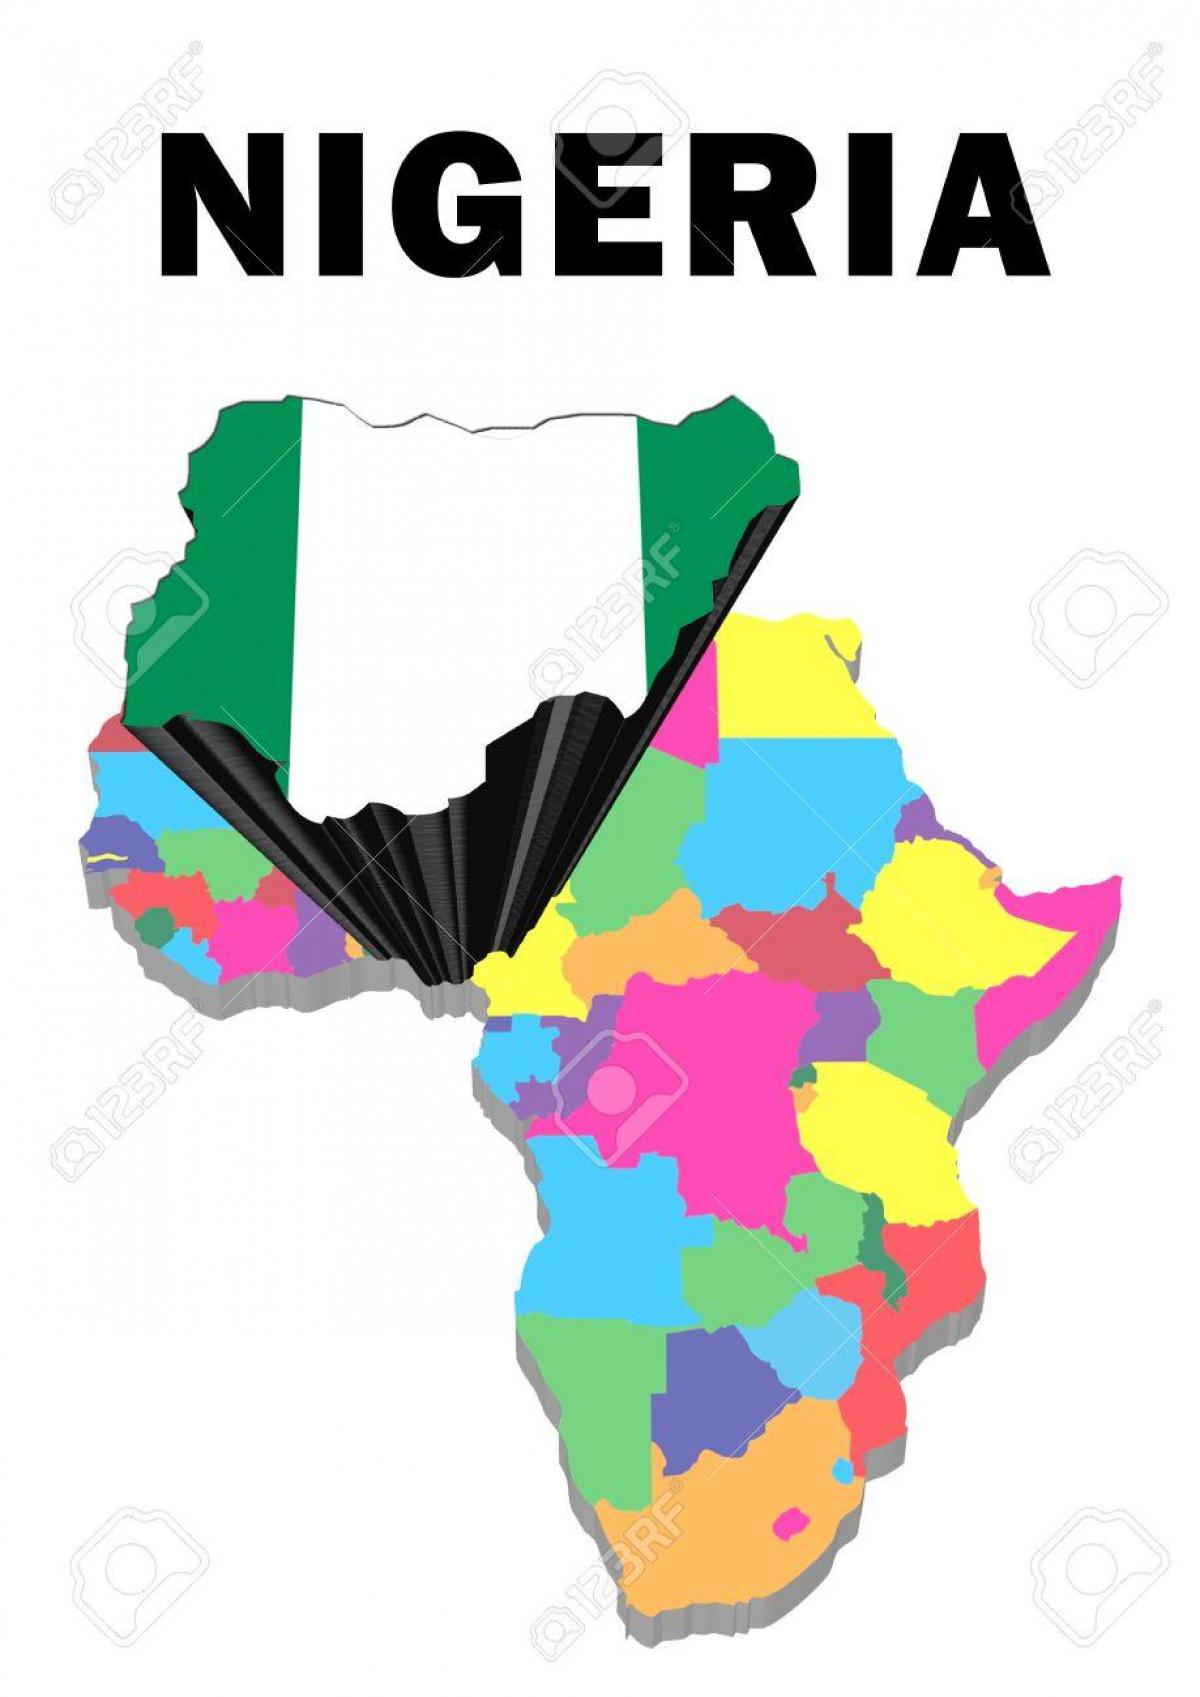 peta afrika dengan nigeria disorot